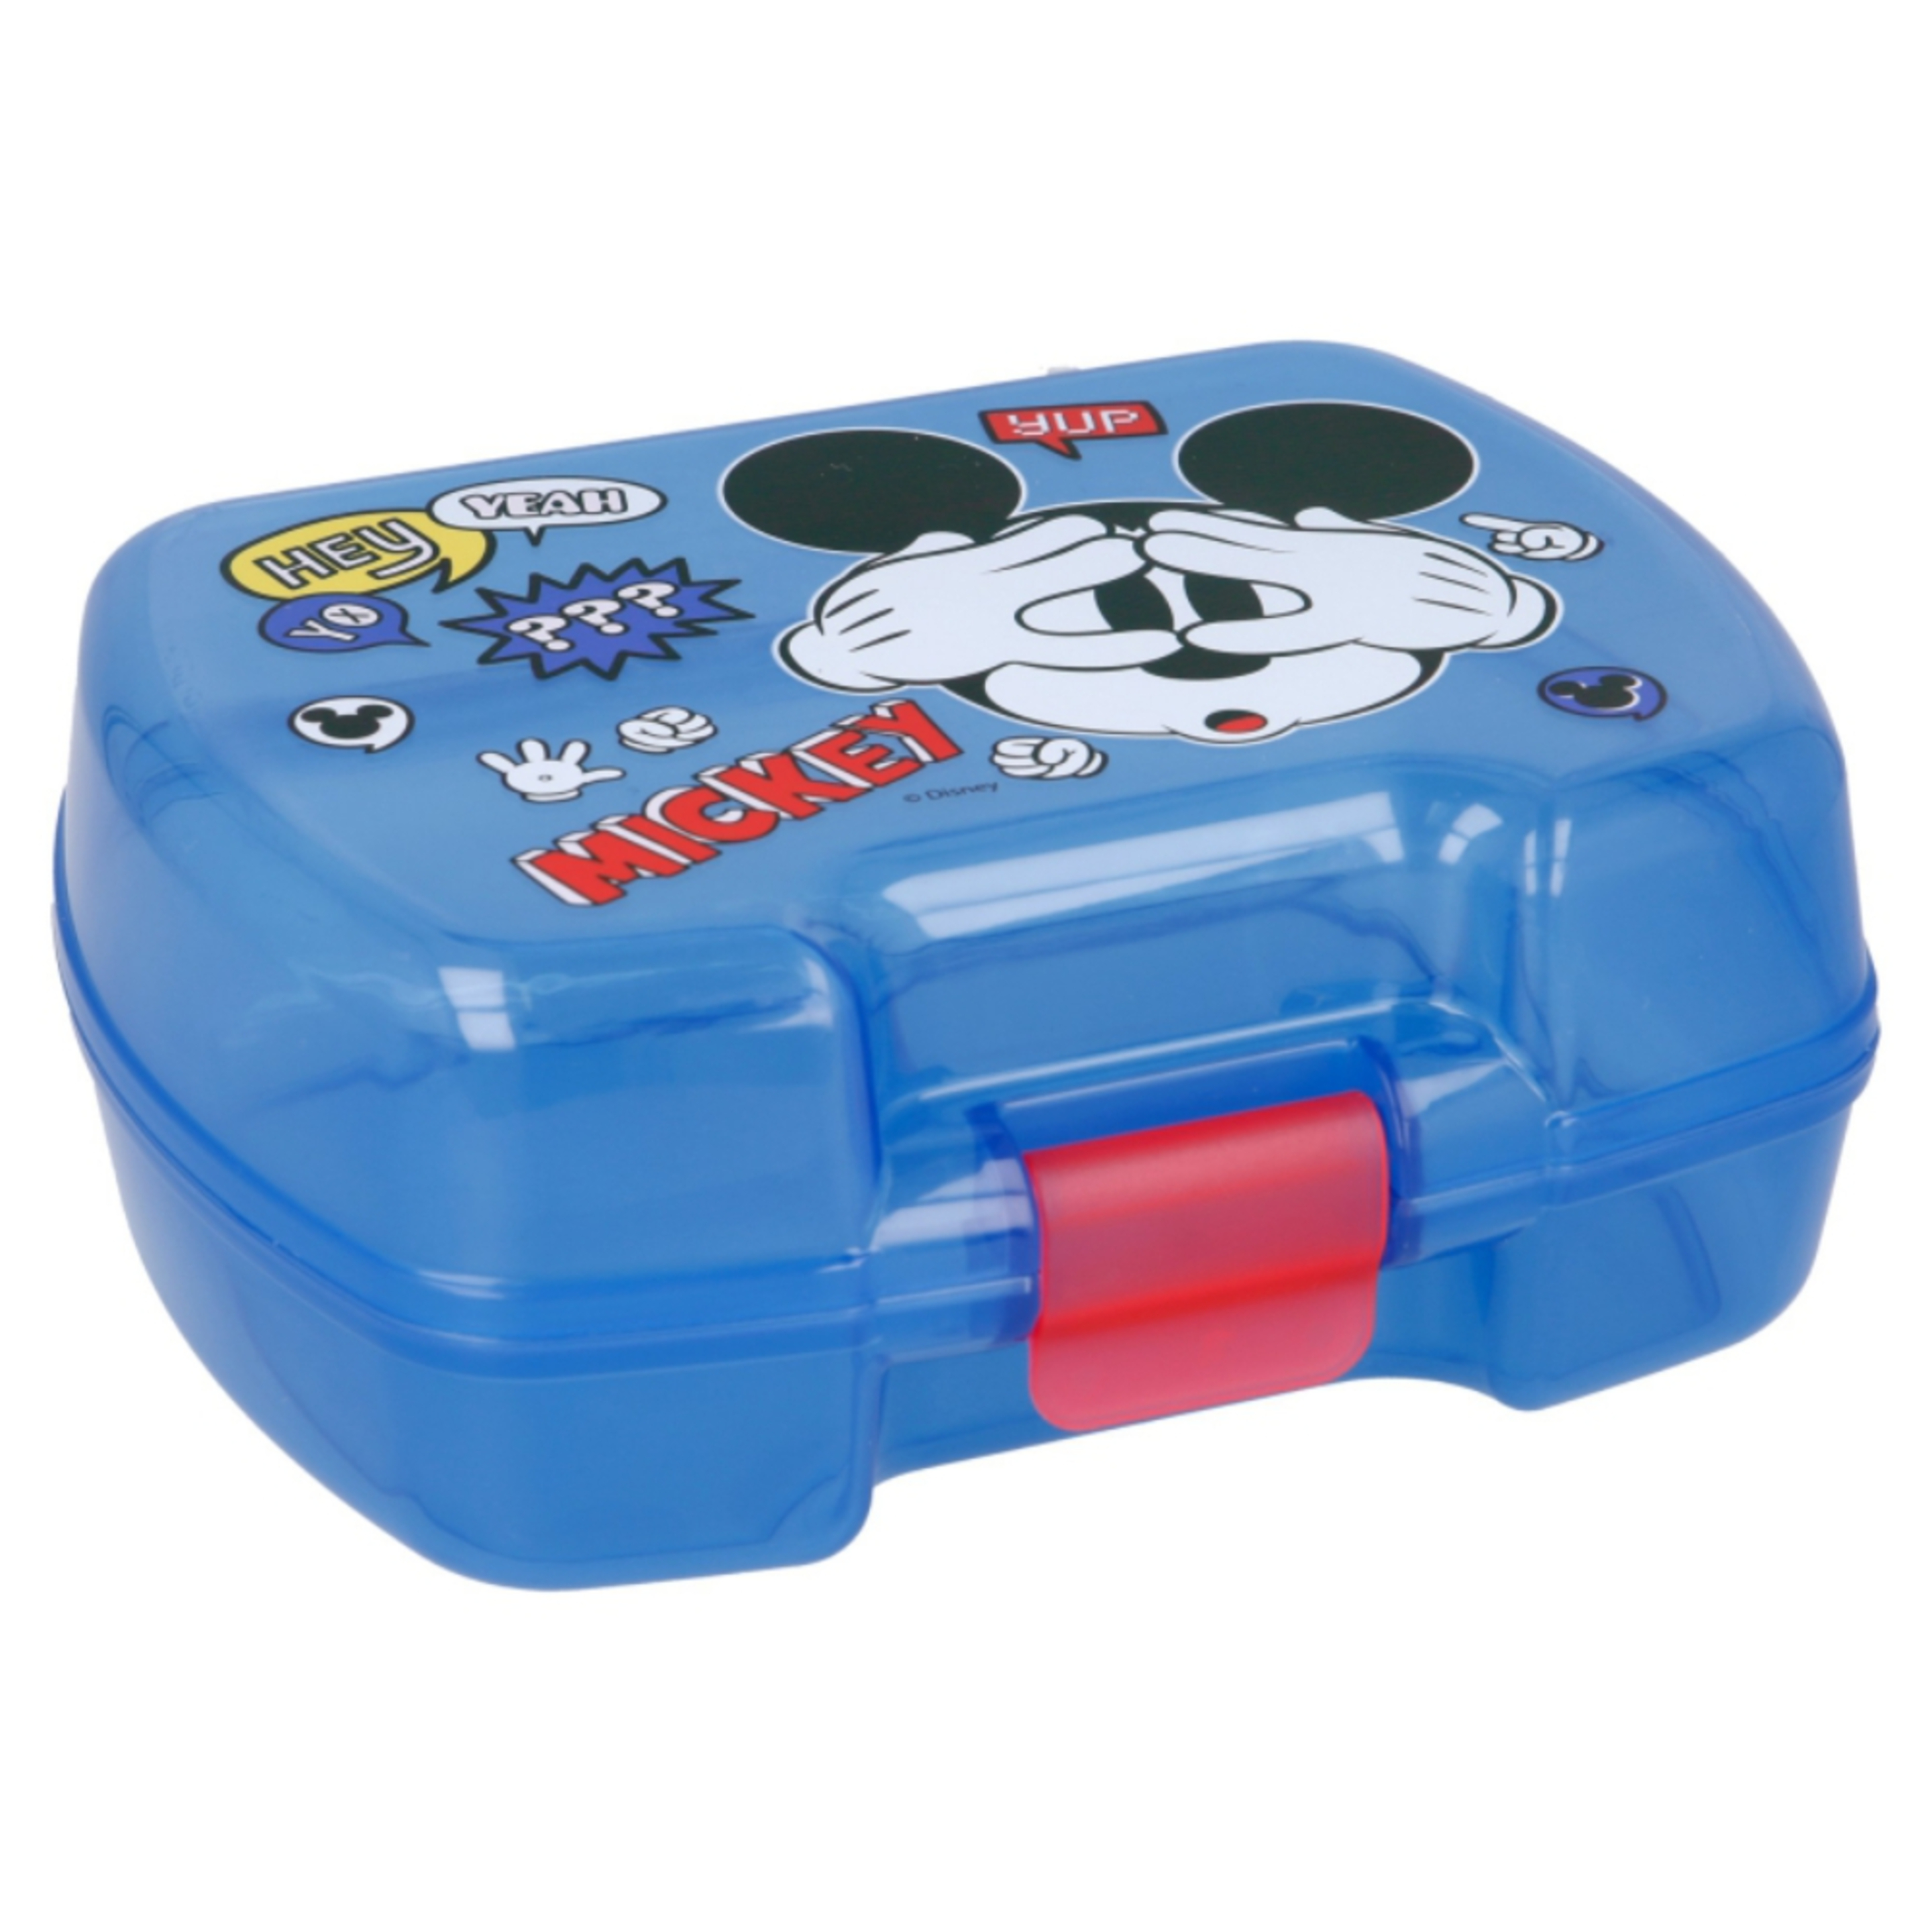 Sandwichera Mickey Mouse 65960 - azul - 